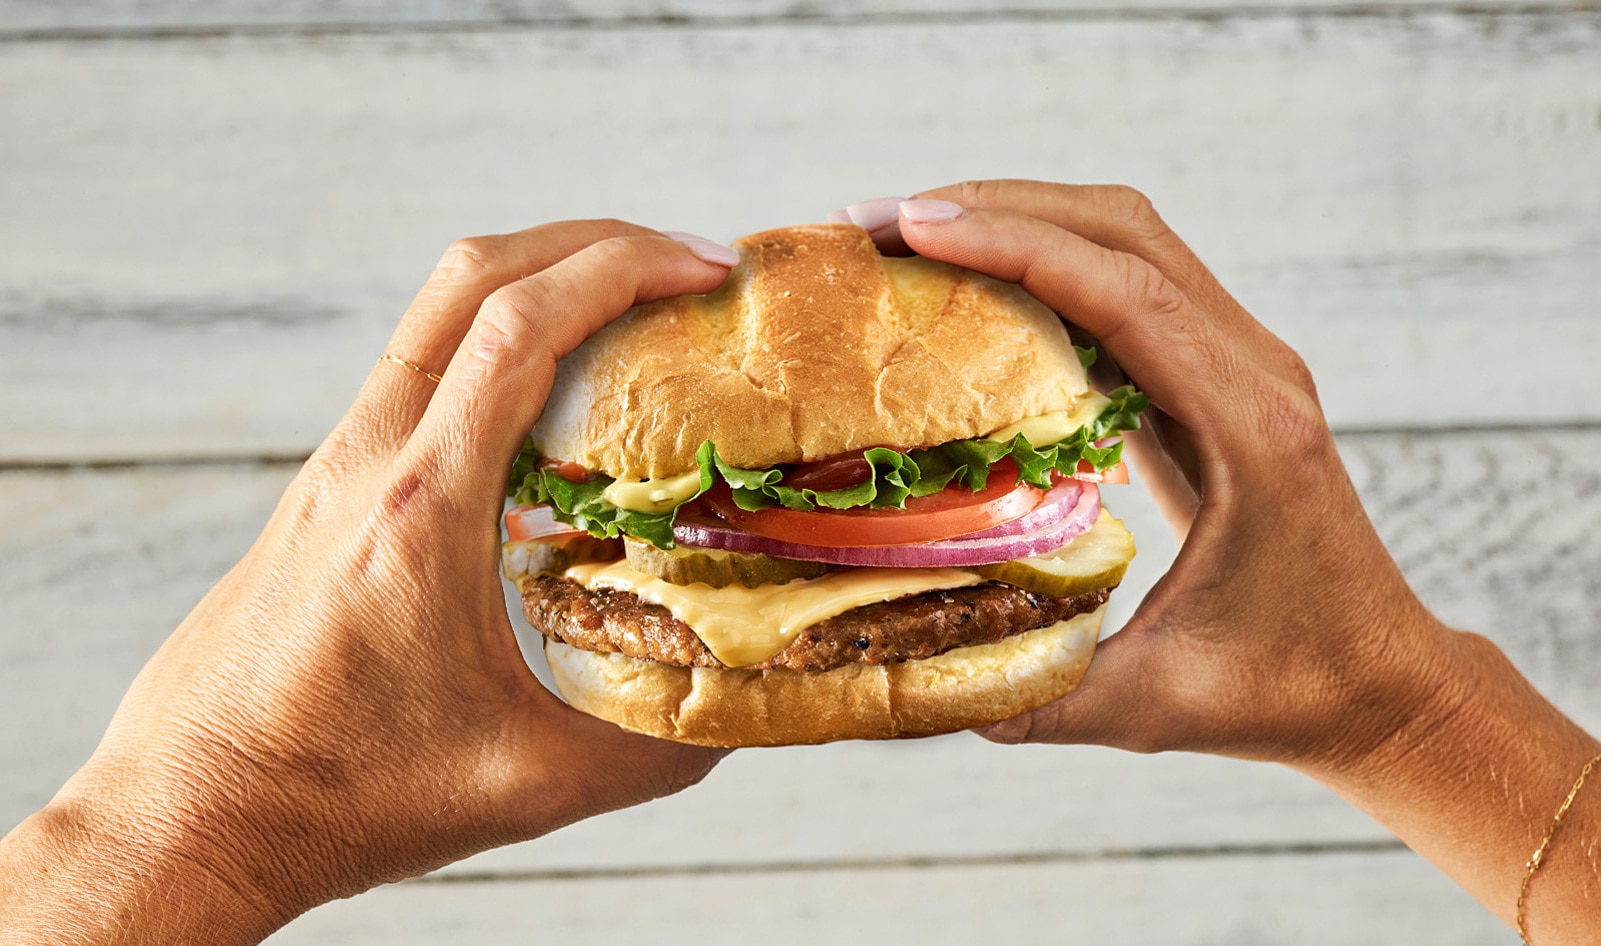 Jackfruit Burgers Make Fast-Food Debut at Smashburger in 3 States